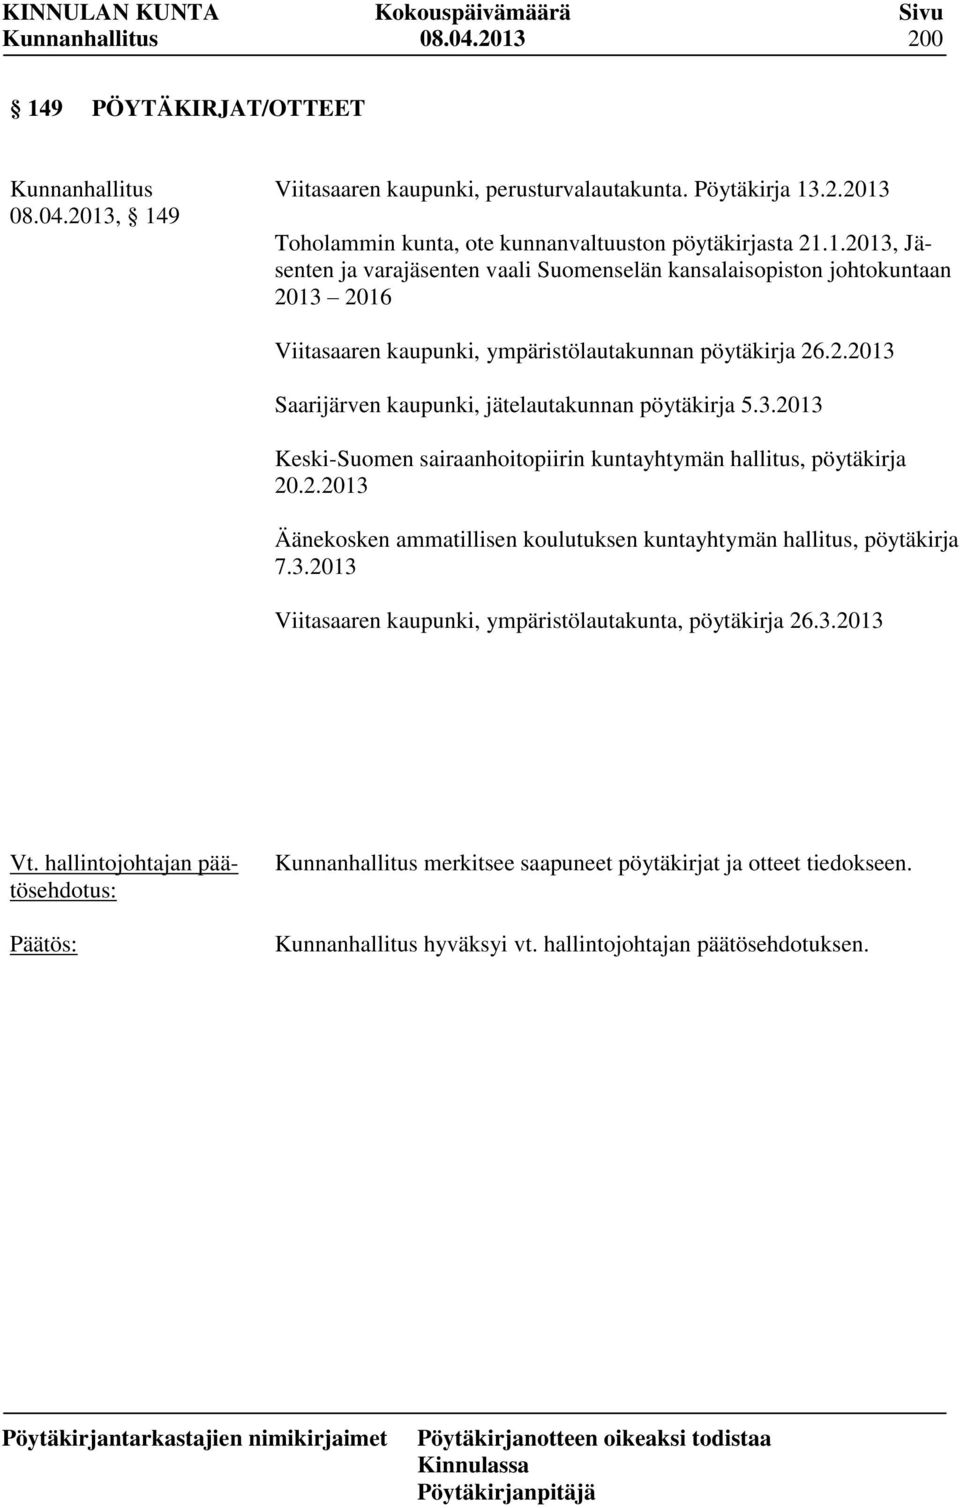 3.2013 Viitasaaren kaupunki, ympäristölautakunta, pöytäkirja 26.3.2013 merkitsee saapuneet pöytäkirjat ja otteet tiedokseen. hyväksyi vt. hallintojohtajan päätösehdotuksen.